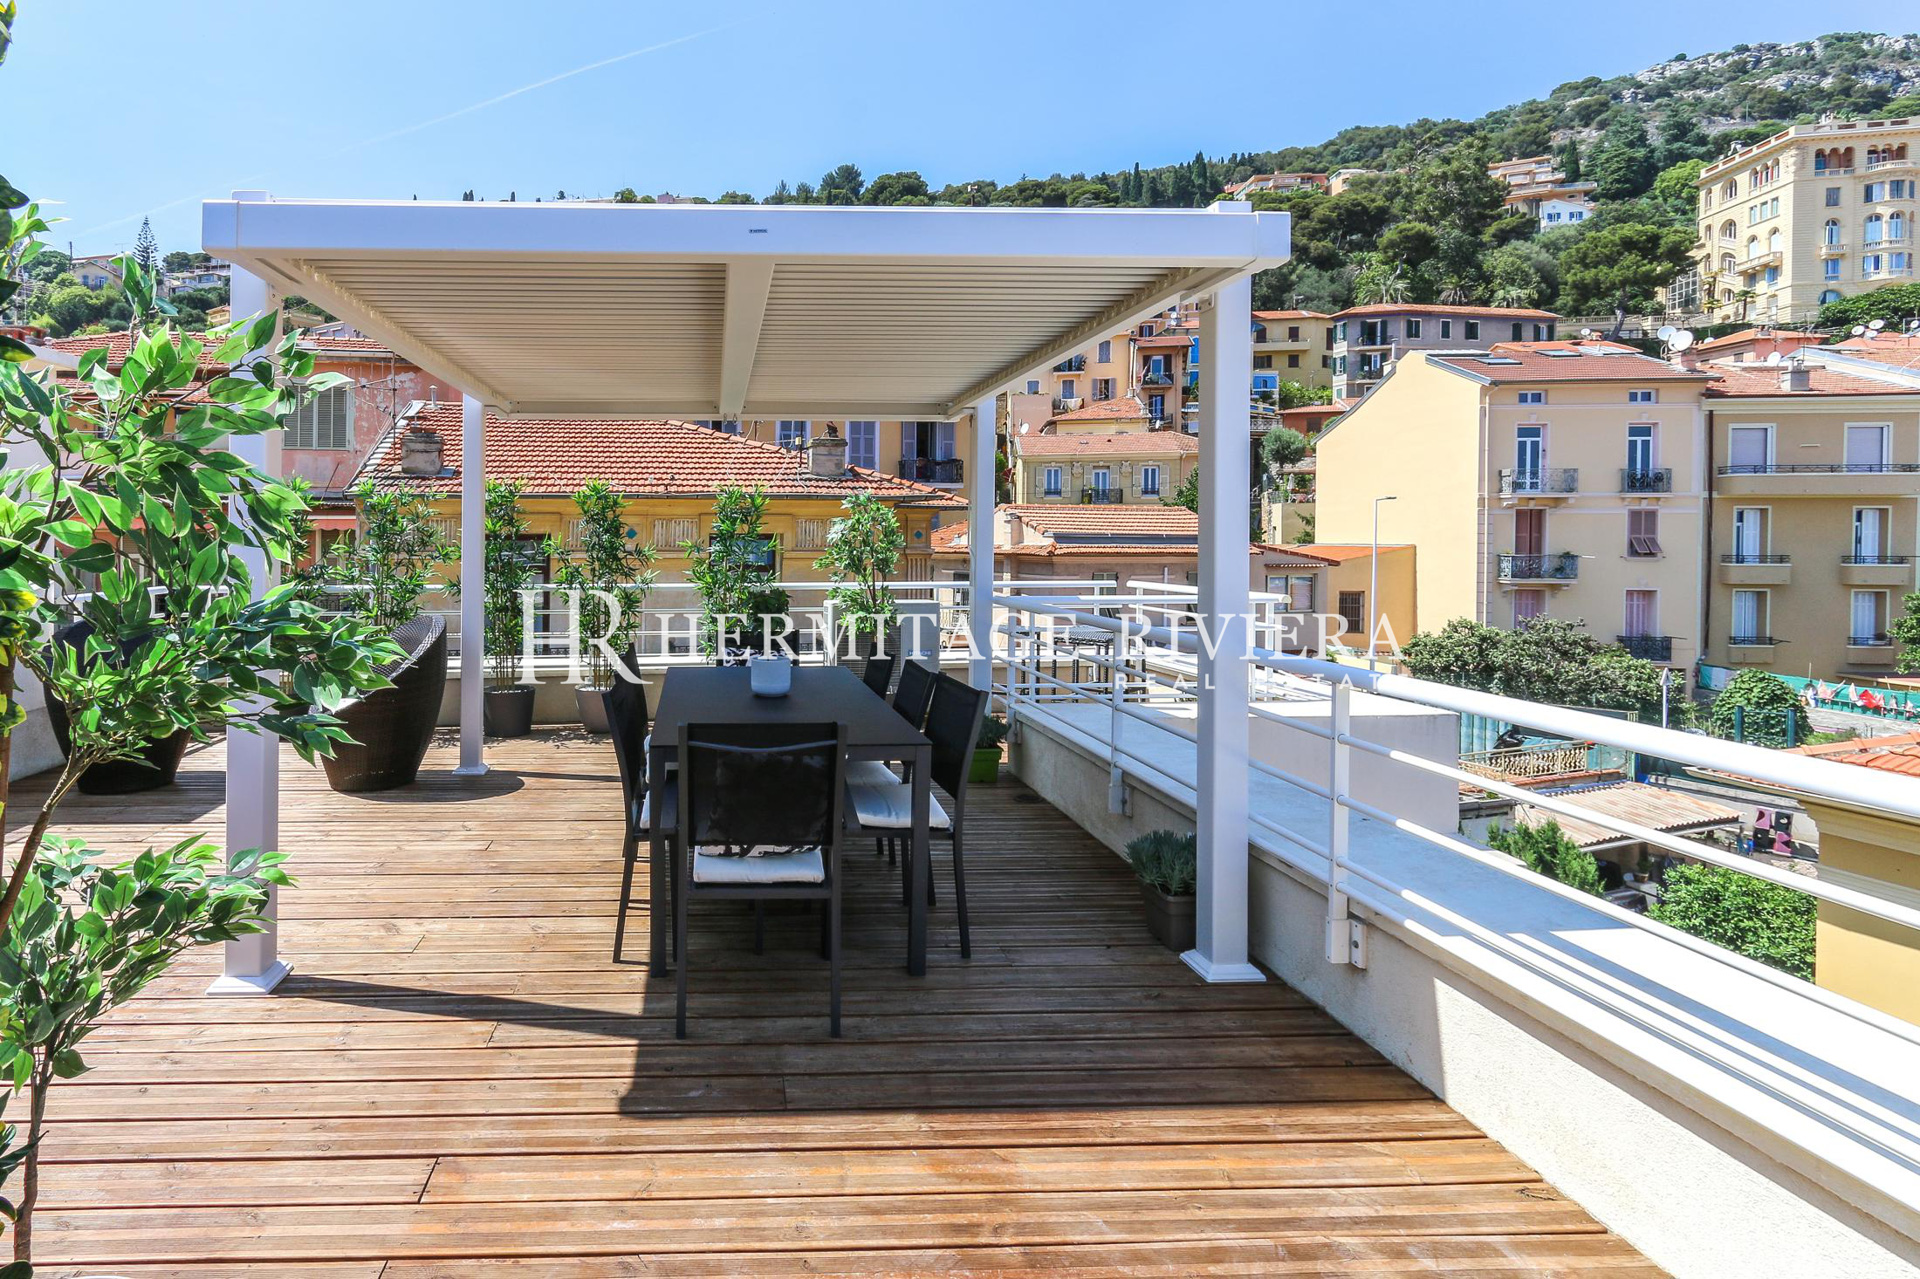 Penthouse-duplex renovated overlooking Monaco (image 24)